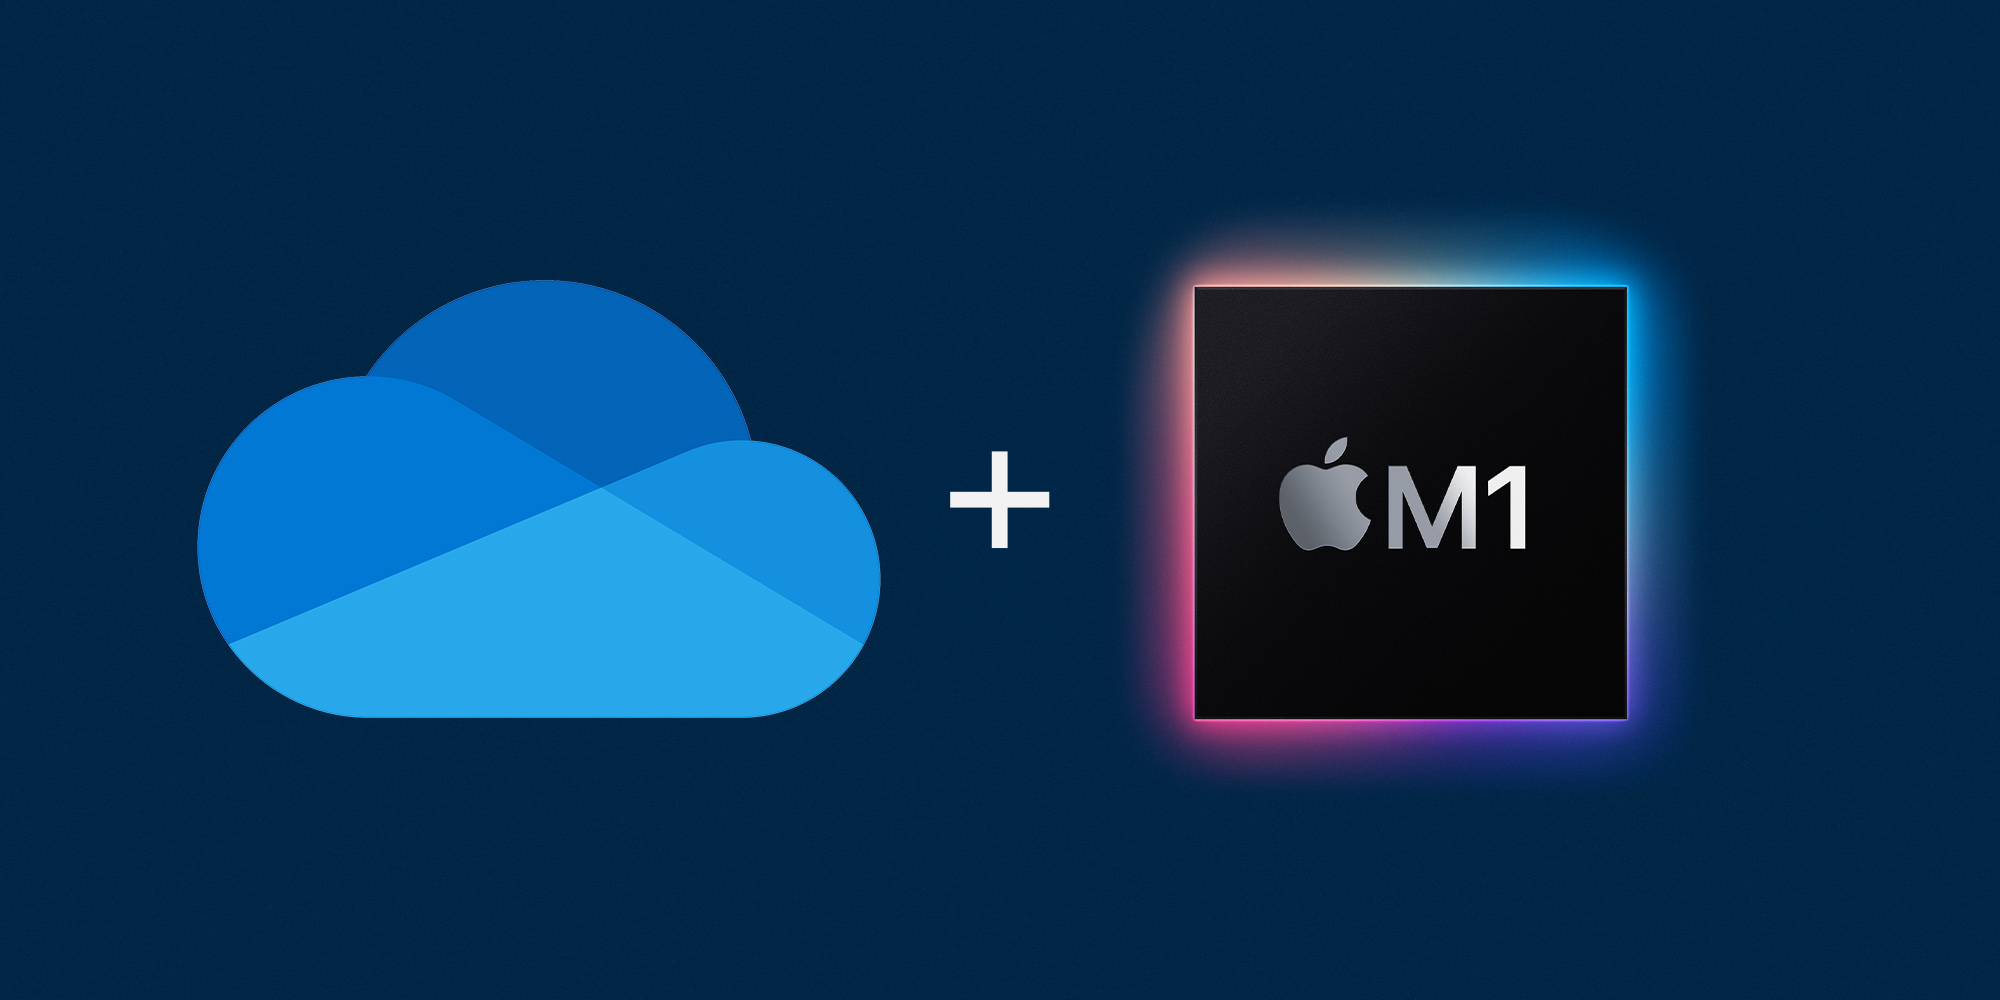 Η Microsoft διέθεσε την ARM έκδοση του OneDrive για Mac με M1 επεξεργαστή και για Windows on ARM